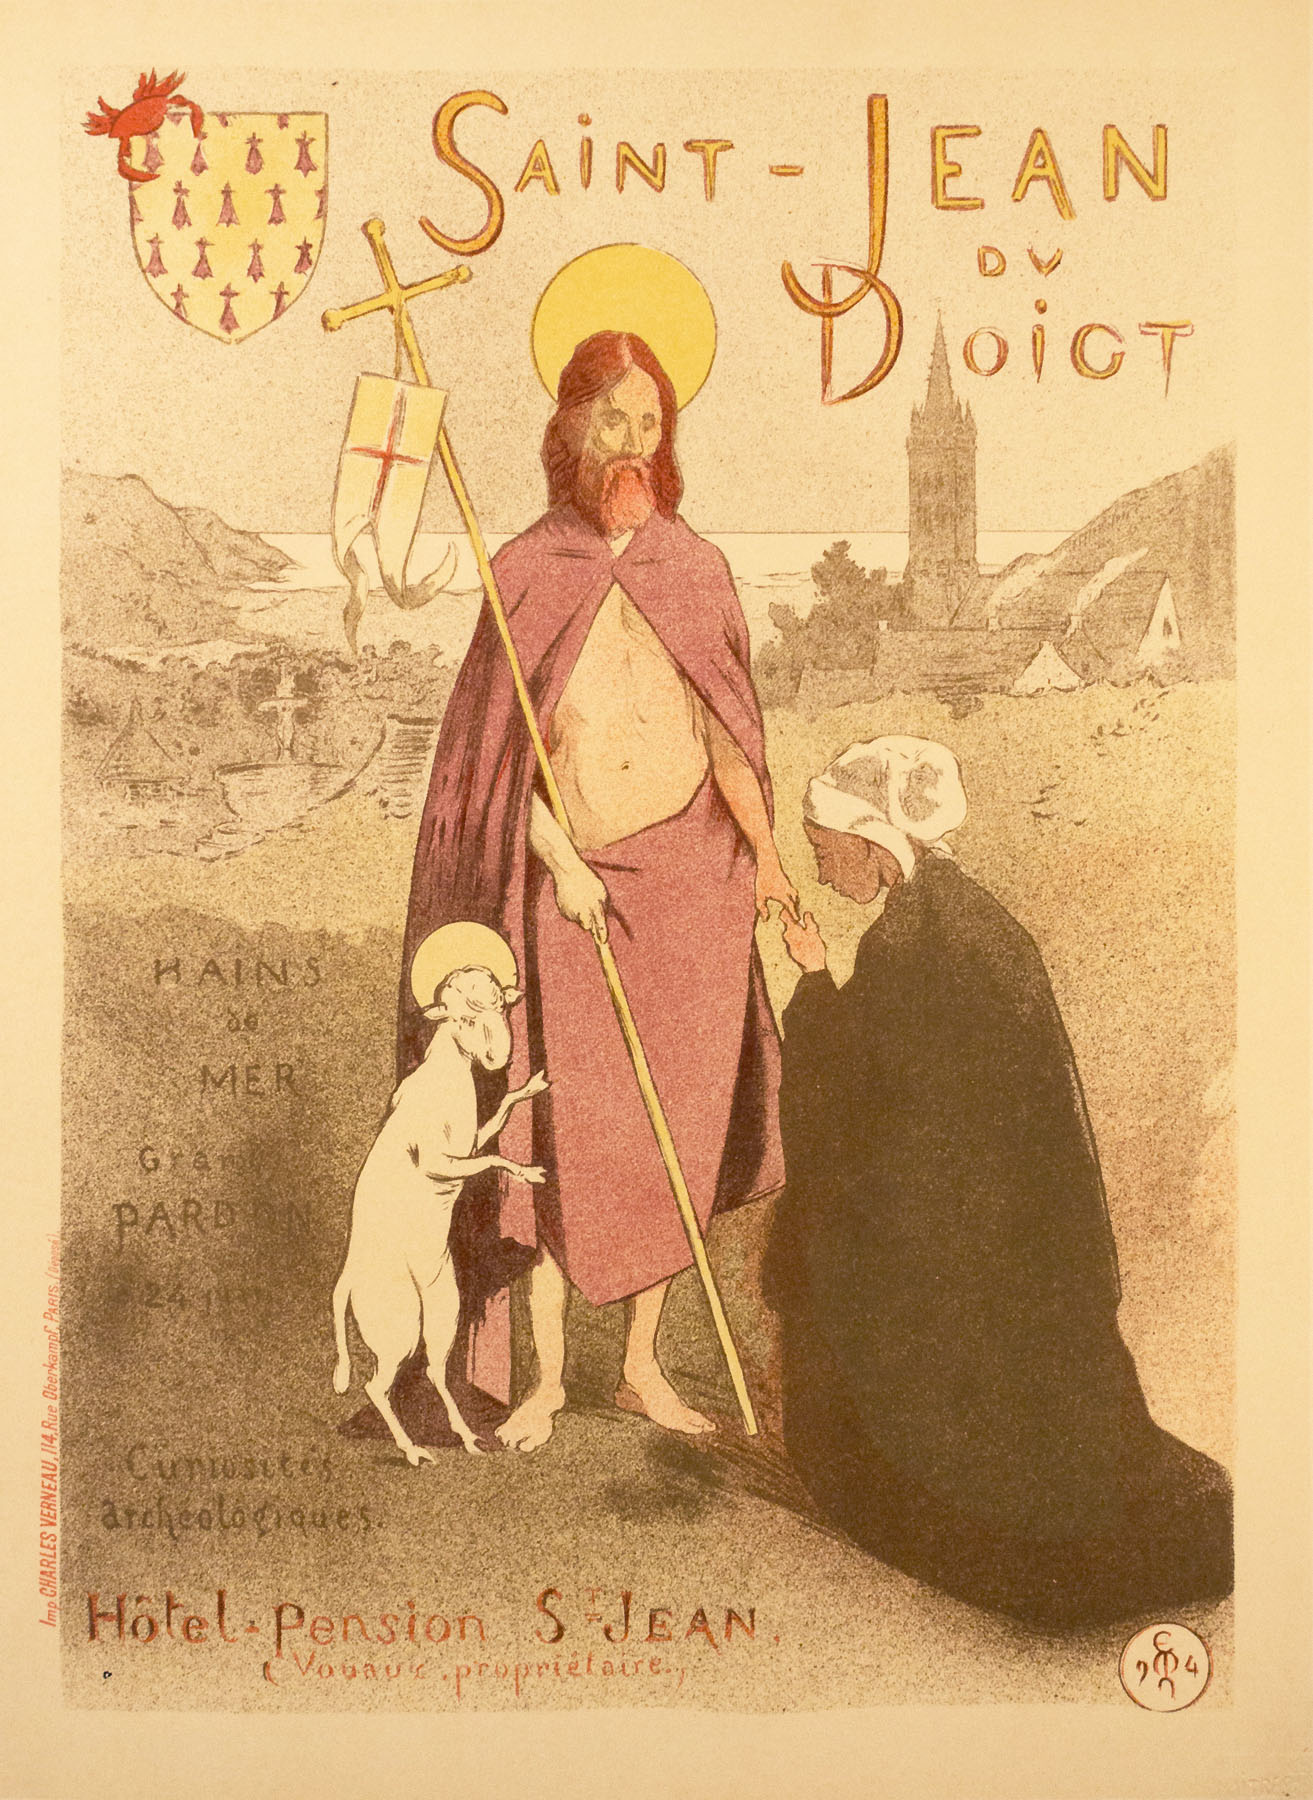 Saint-Jean du Doigt, "Maitres de l'Affiche" plate 178